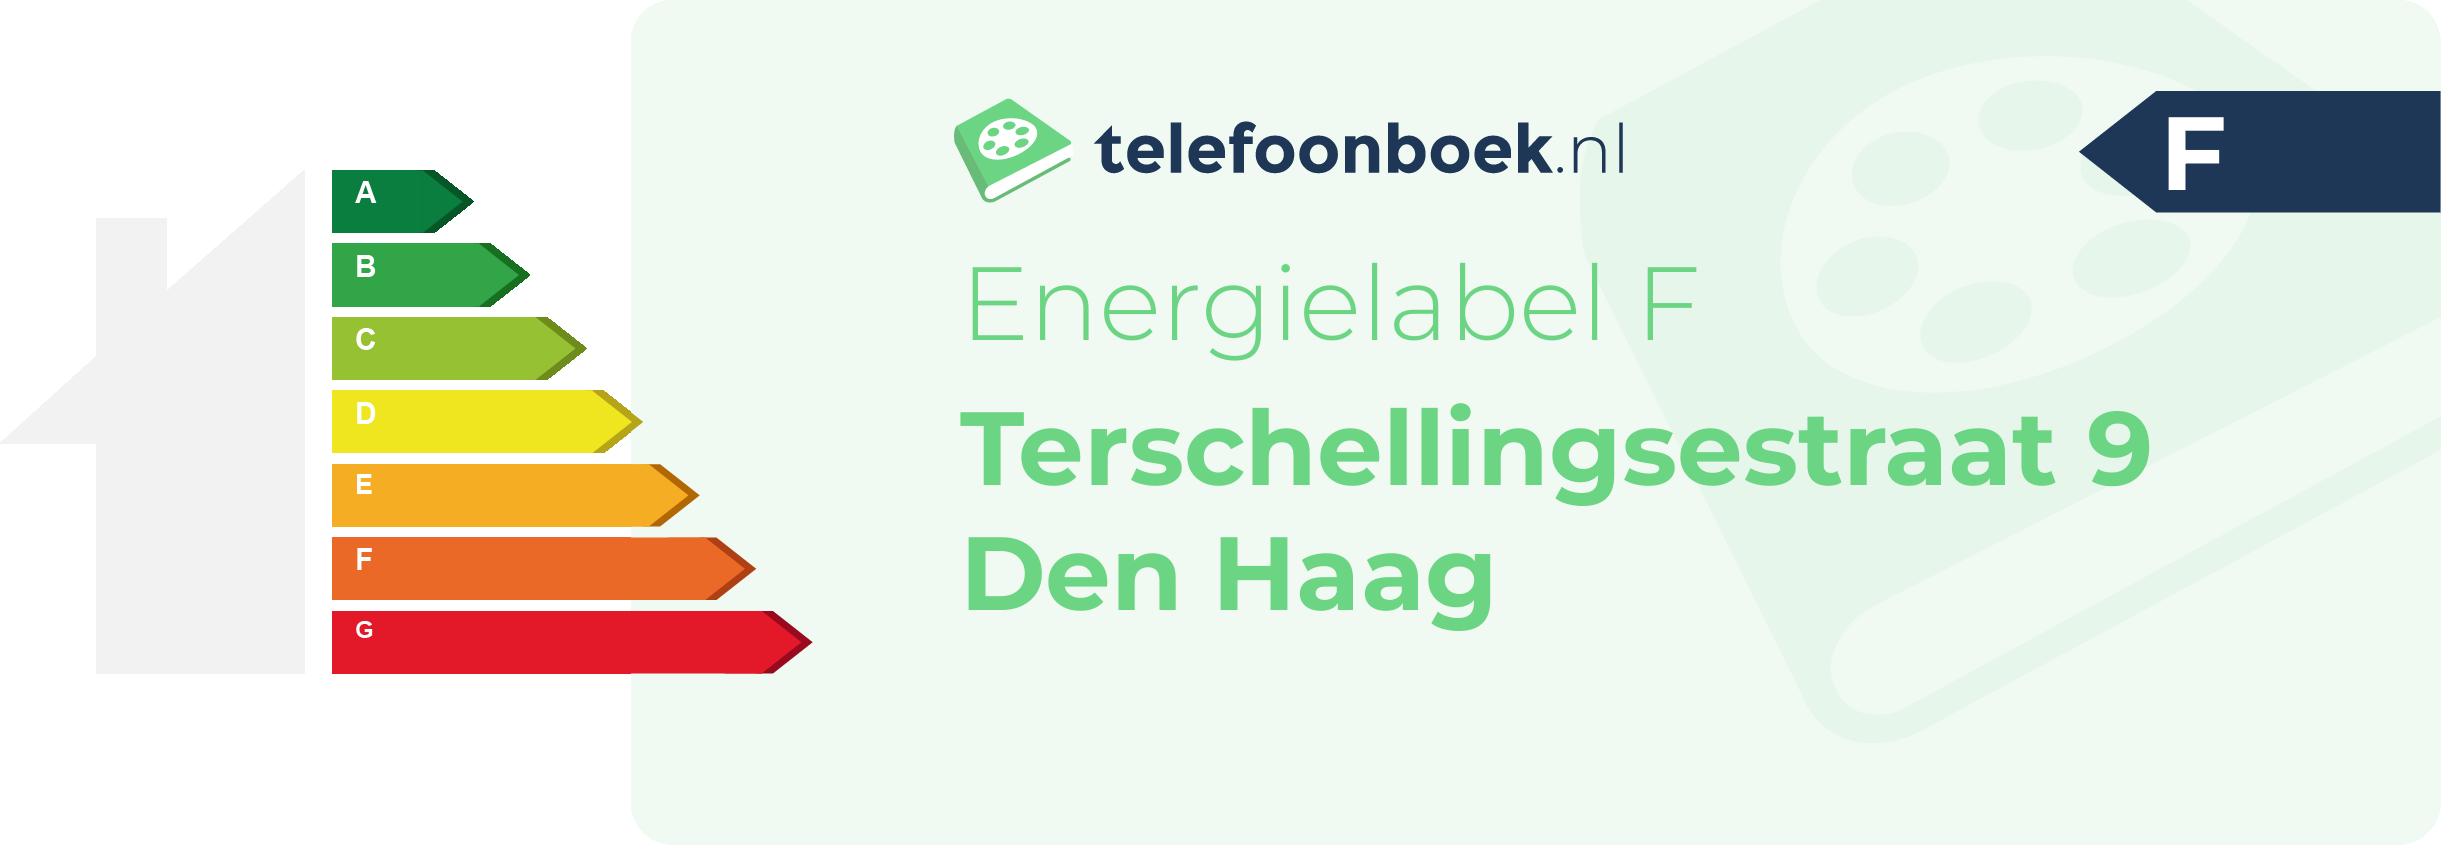 Energielabel Terschellingsestraat 9 Den Haag